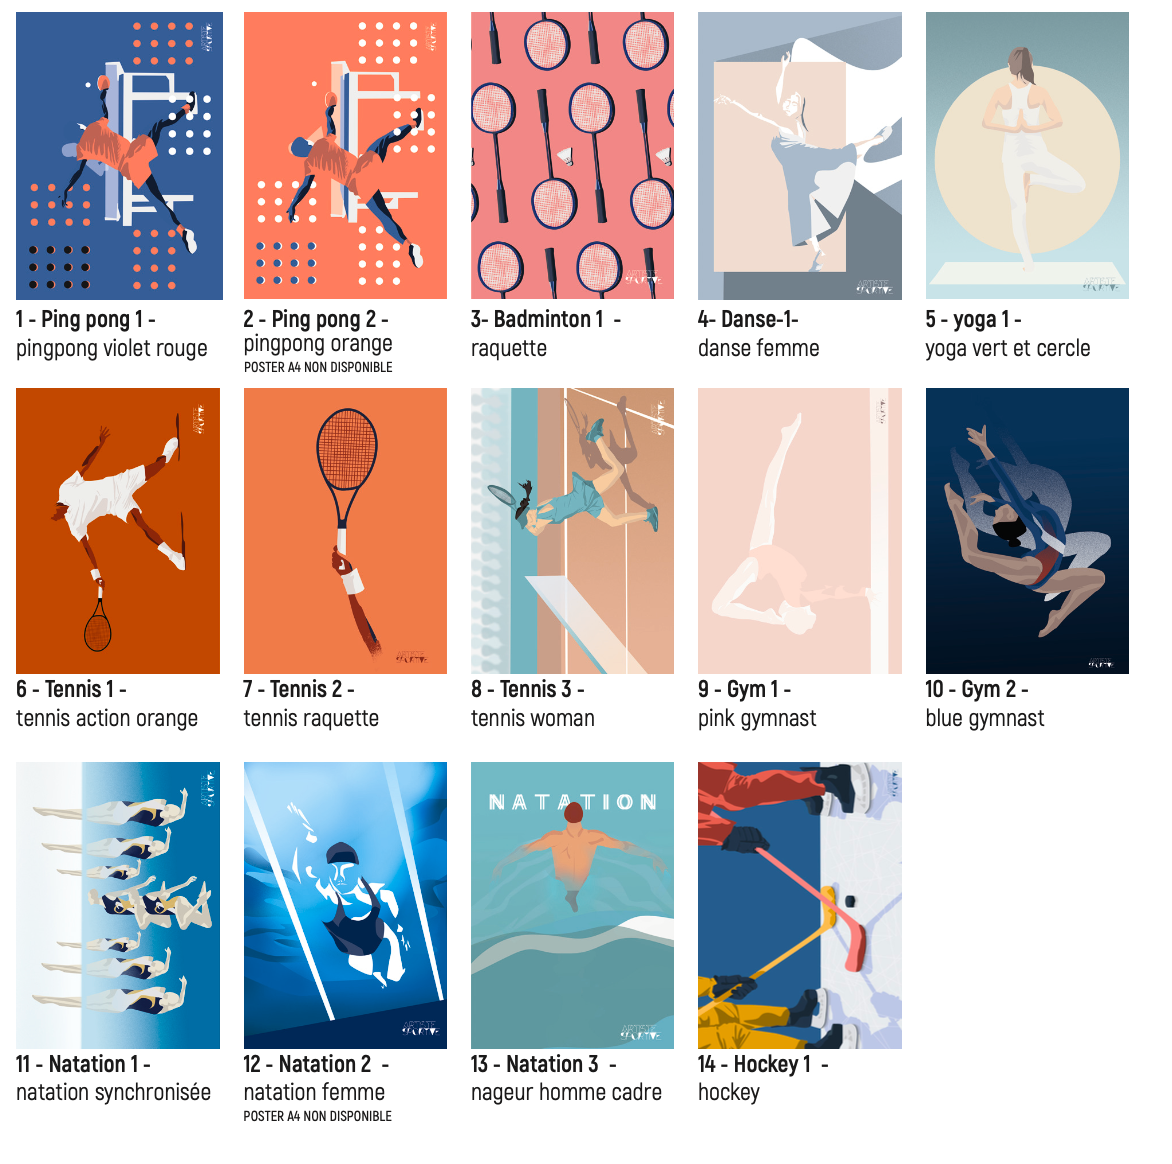 Carte de judo homme bleu | Carte judo | Artiste Sportive